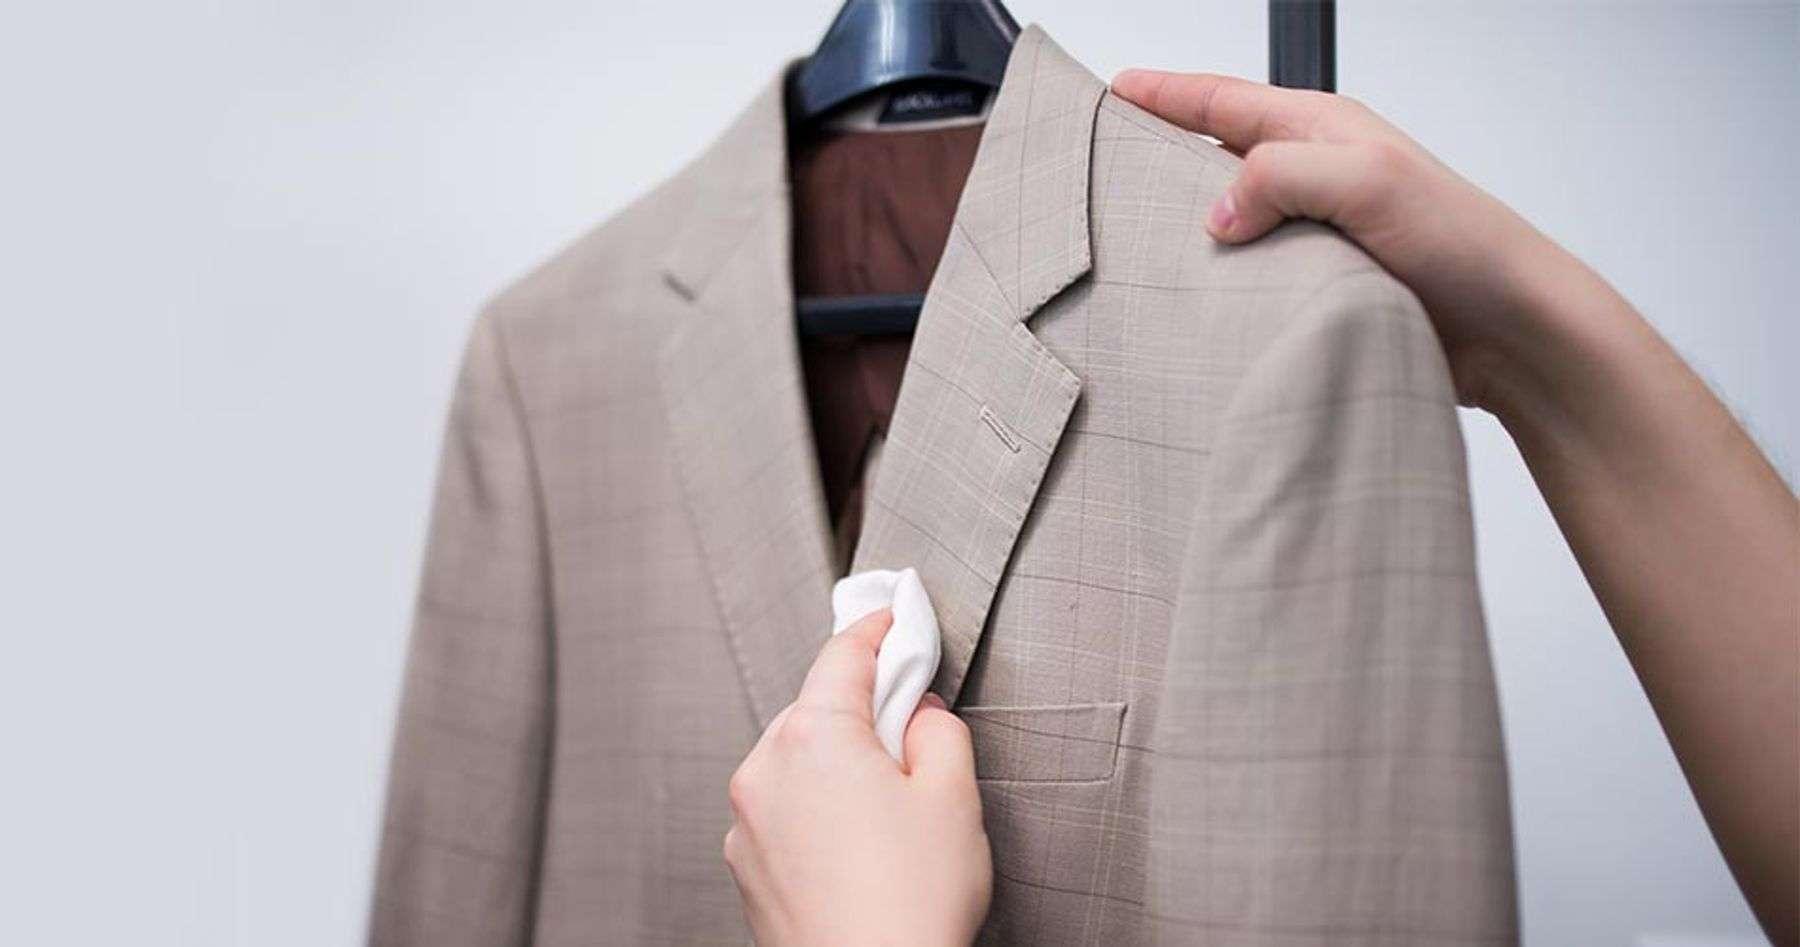 Dùng khăn ẩm để chà nhẹ lên các vết bẩn trên áo vest để vệ sinh trước khi giặt bằng máy giặt